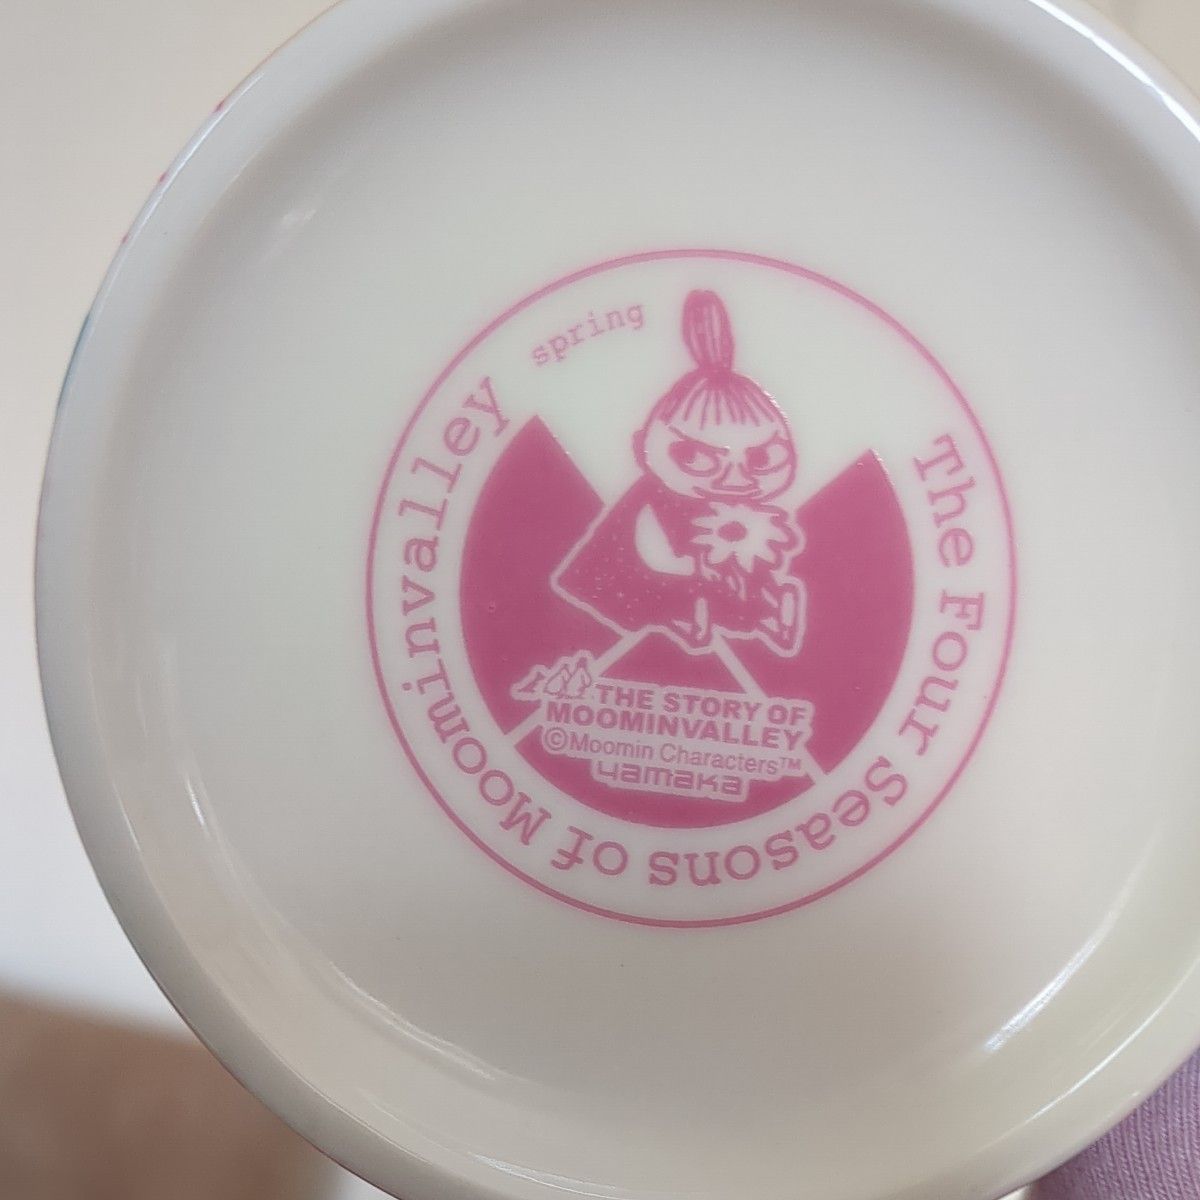 ムーミン マグカップ&サラダボール皿「未使用品」梱包の写真載せています!細心の注意を払い発送致します